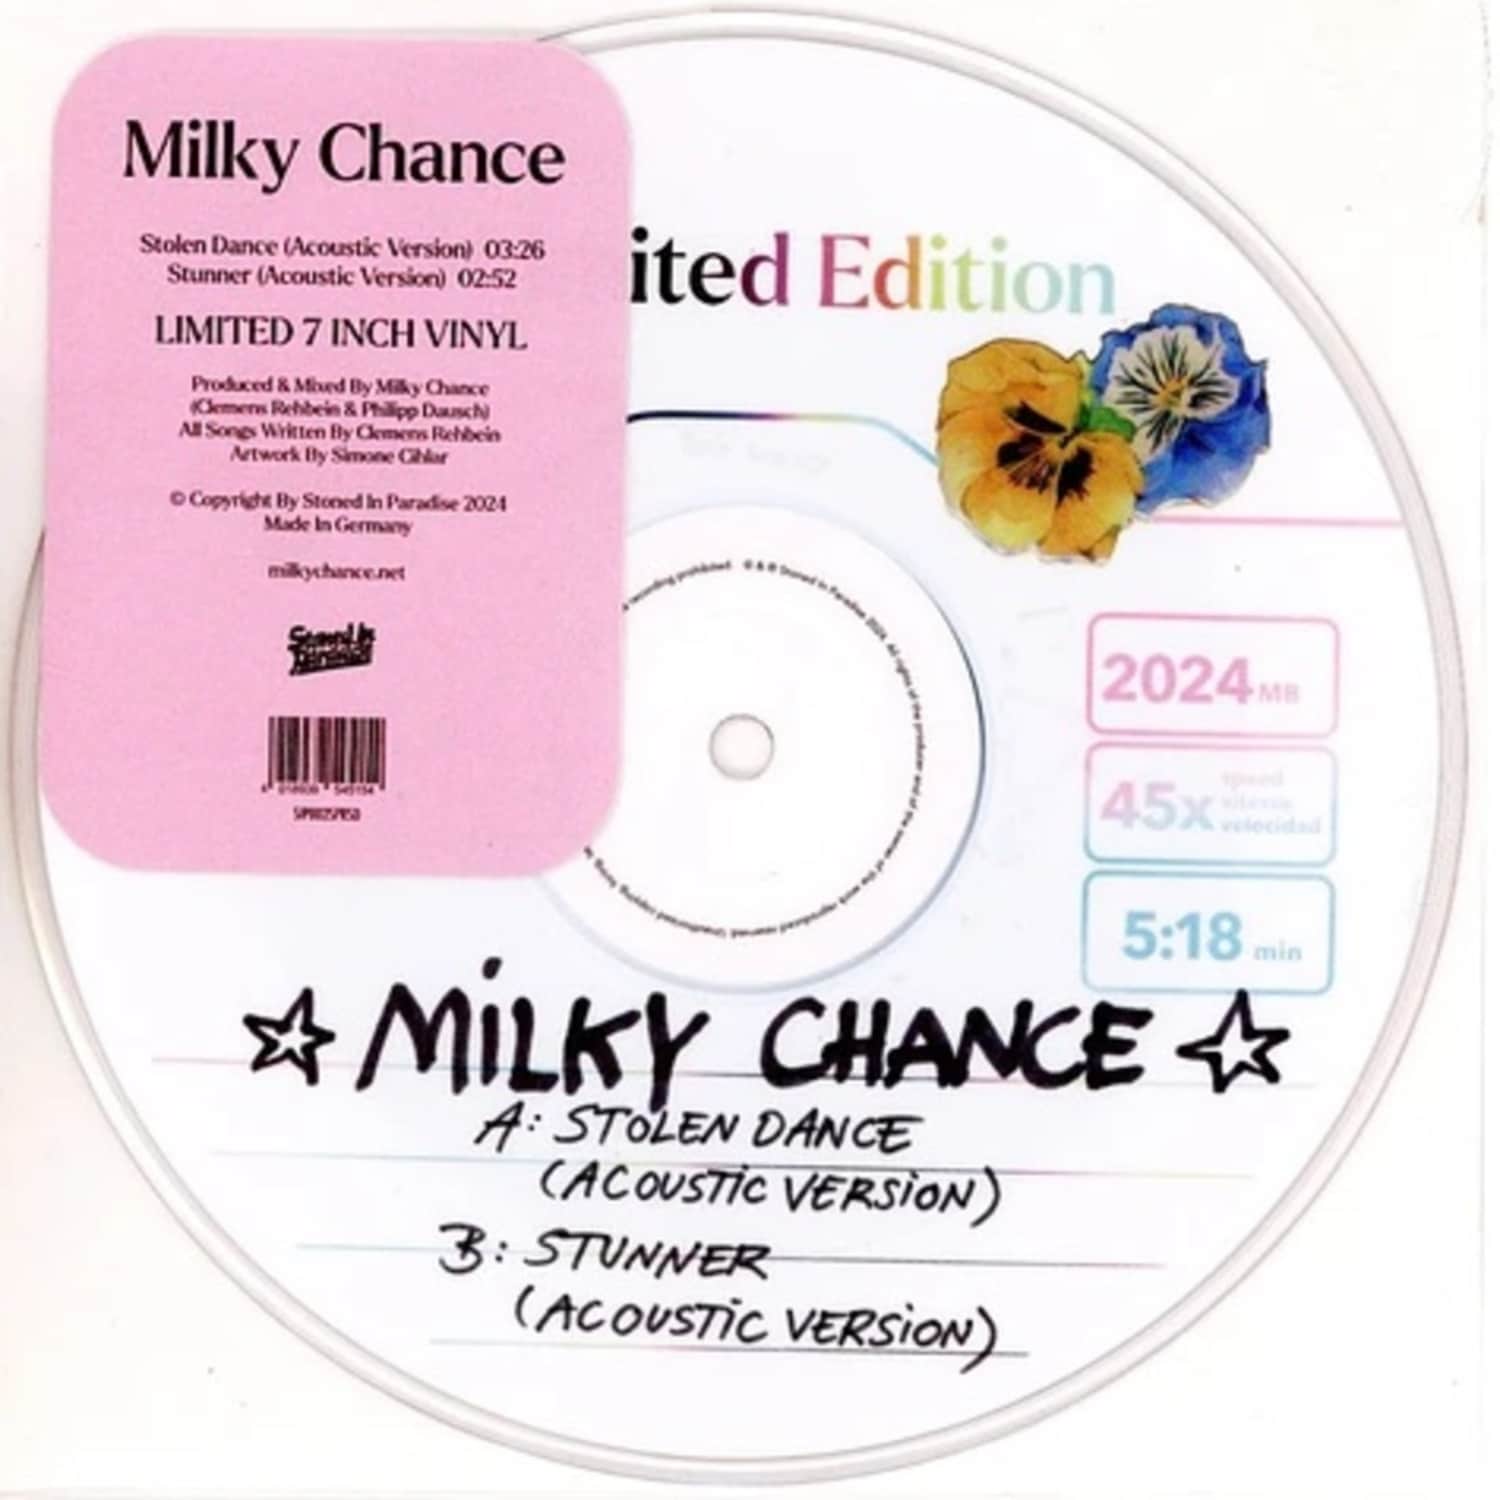 Milky Chance - STOLEN DANCE 